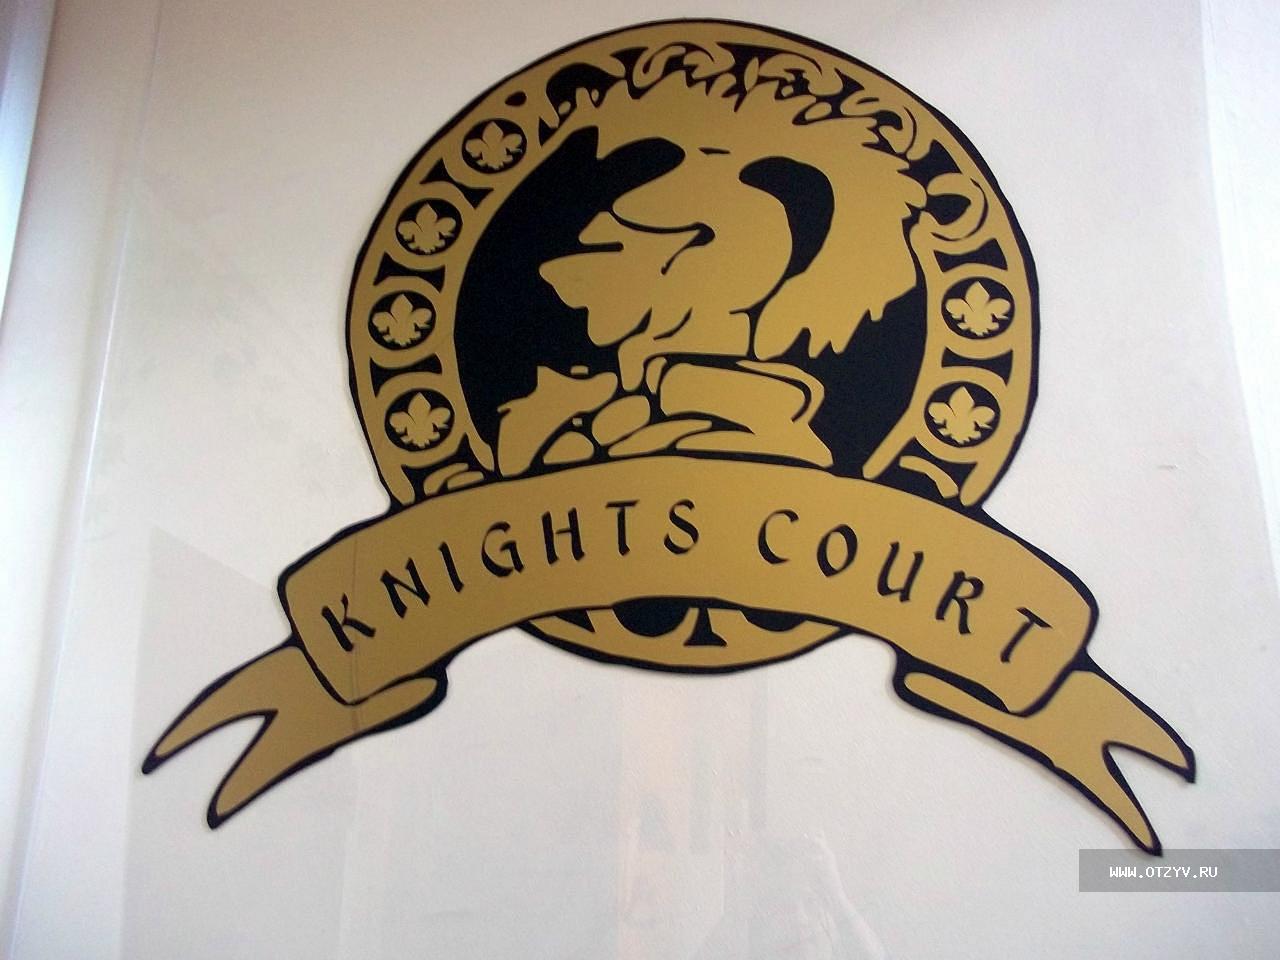 Knights Court Hostel